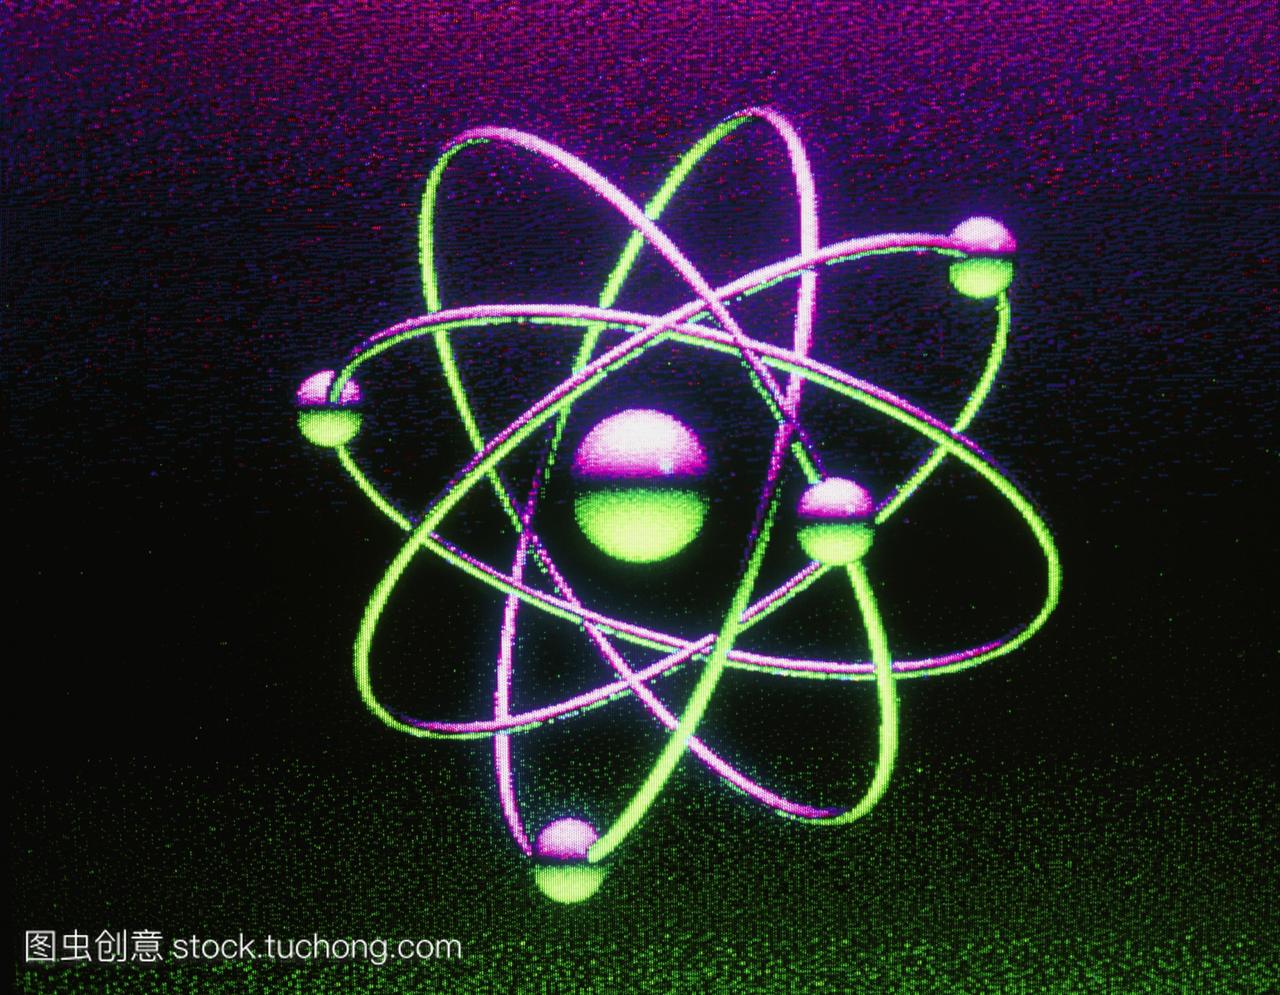 铍原子。计算机数字化的一种铍原子的图解。这